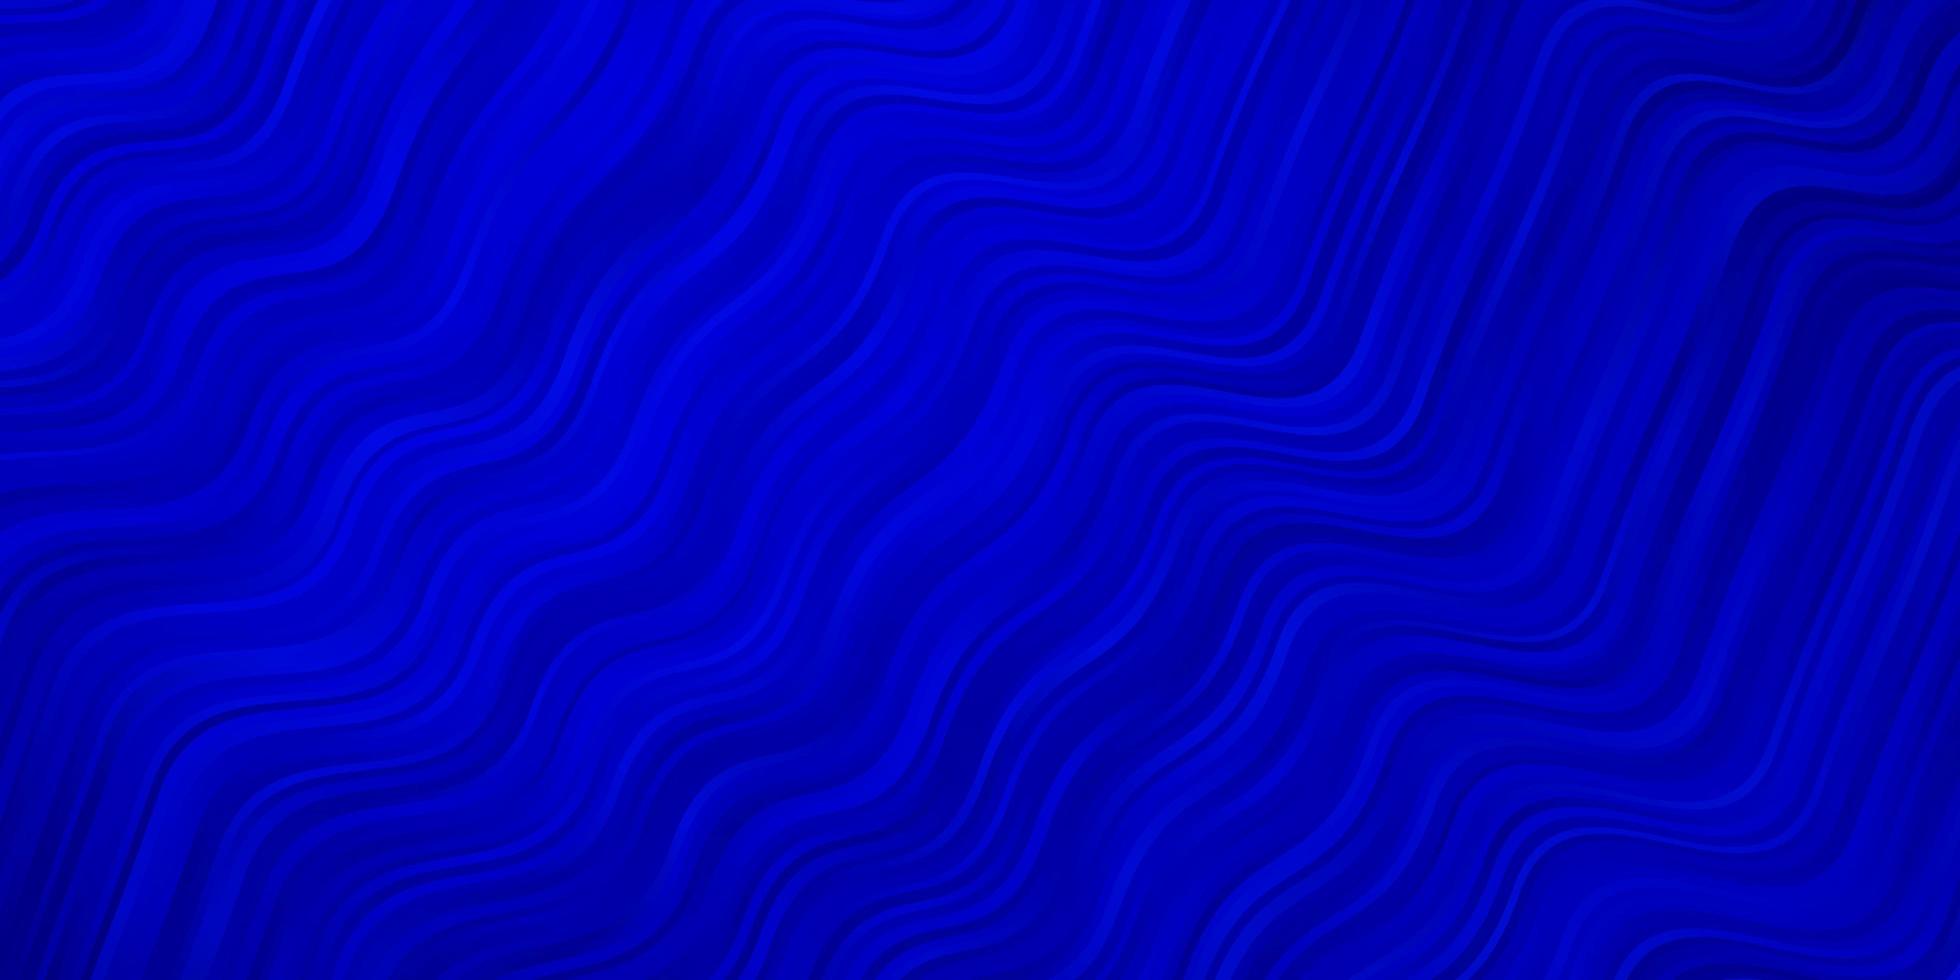 mörkblå vektorbakgrund med kurvor helt ny färgstark illustration med böjda linjer smart design för dina kampanjer vektor